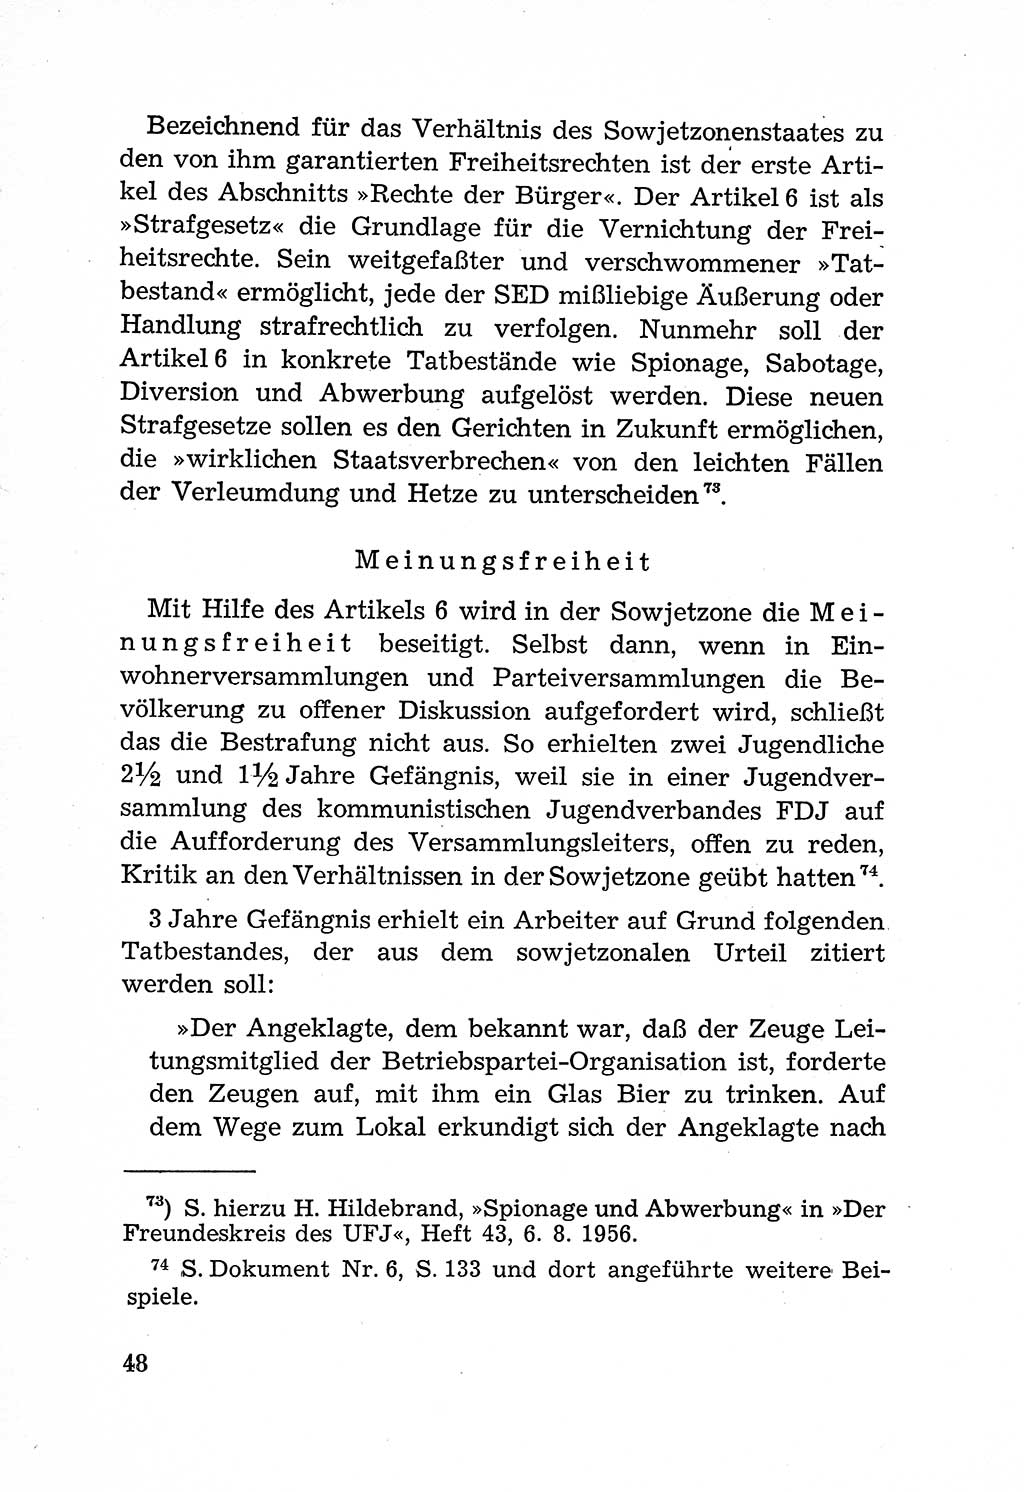 Rechtsstaat in zweierlei Hinsicht, Untersuchungsausschuß freiheitlicher Juristen (UfJ) [Bundesrepublik Deutschland (BRD)] 1956, Seite 48 (R.-St. UfJ BRD 1956, S. 48)